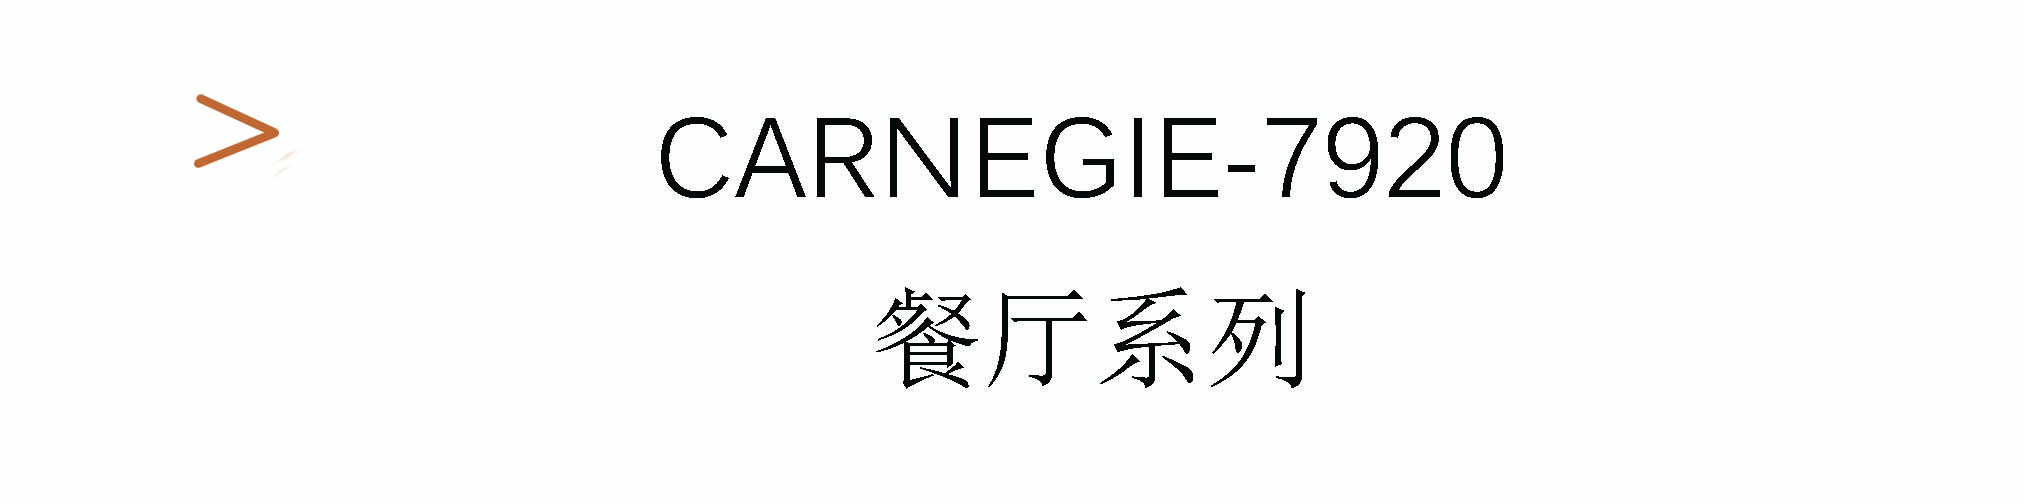 Carnegie-7920